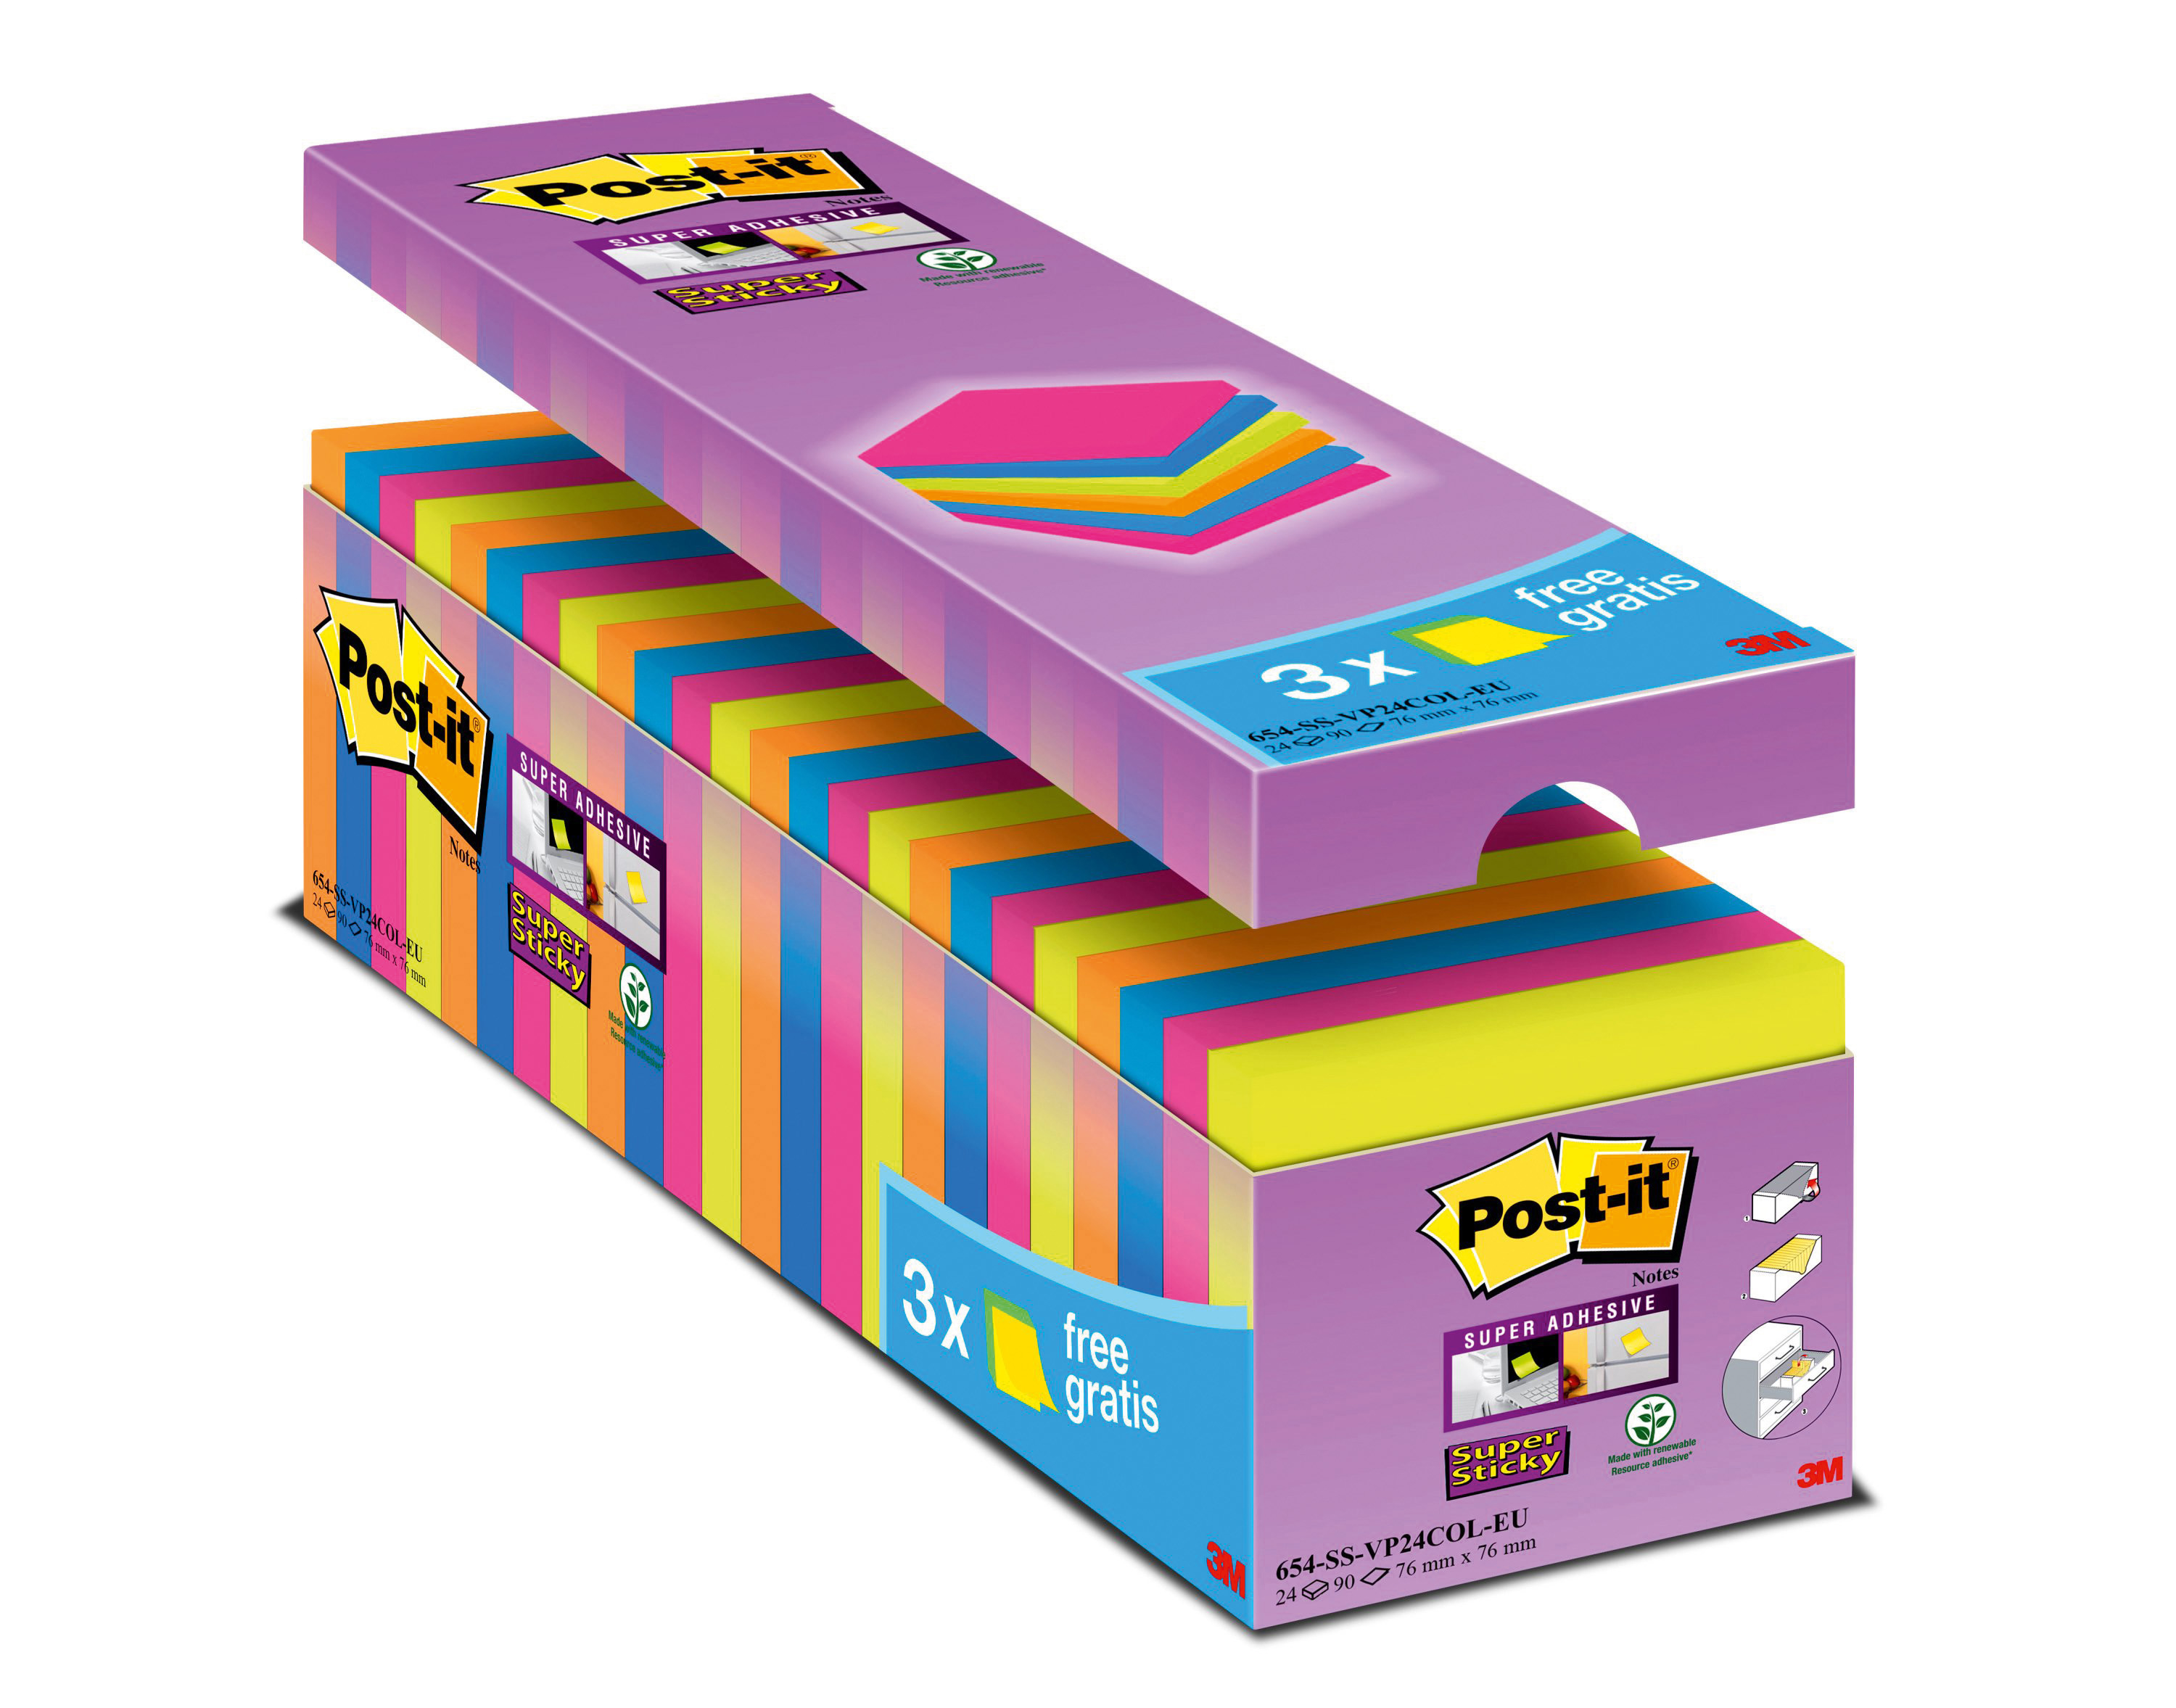 POST-IT Super Sticky Notes 76x76mm 654SE24 24 couleurs 24 x 90 flls.